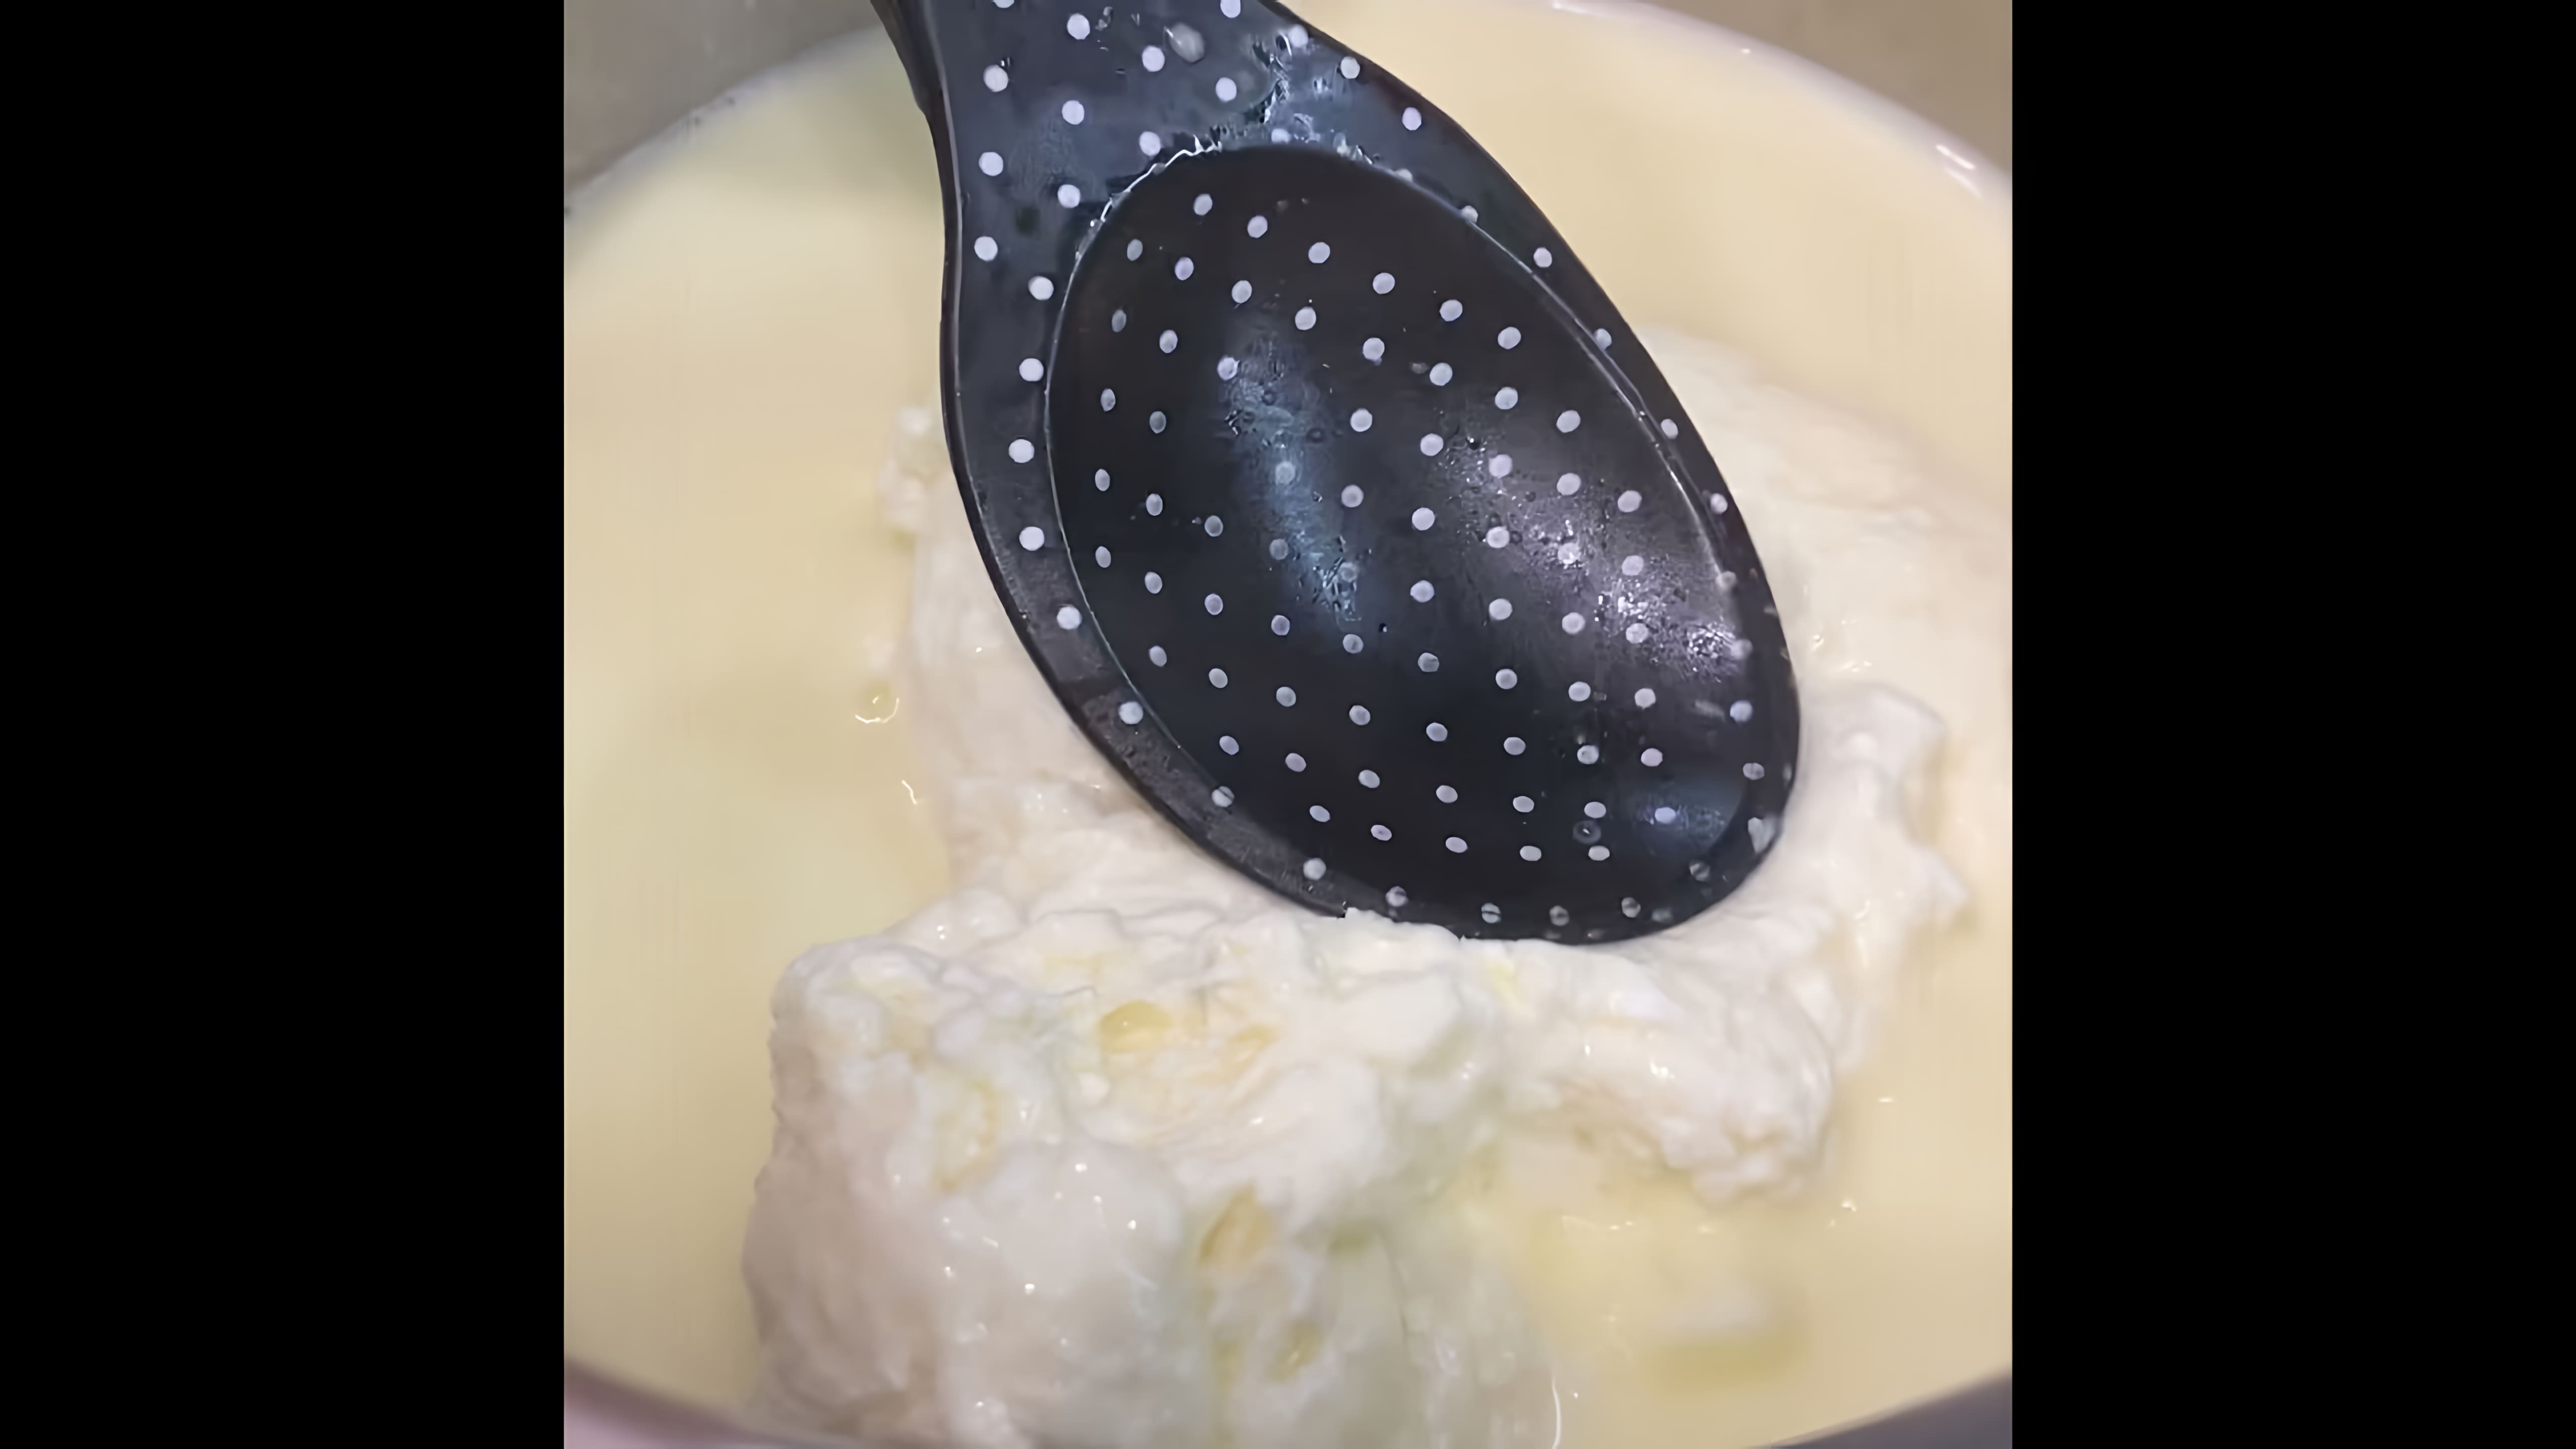 Видео описывает, как приготовить домашний твердый сыр всего за 15 минут, используя всего 2 ингредиента - творог и молоко